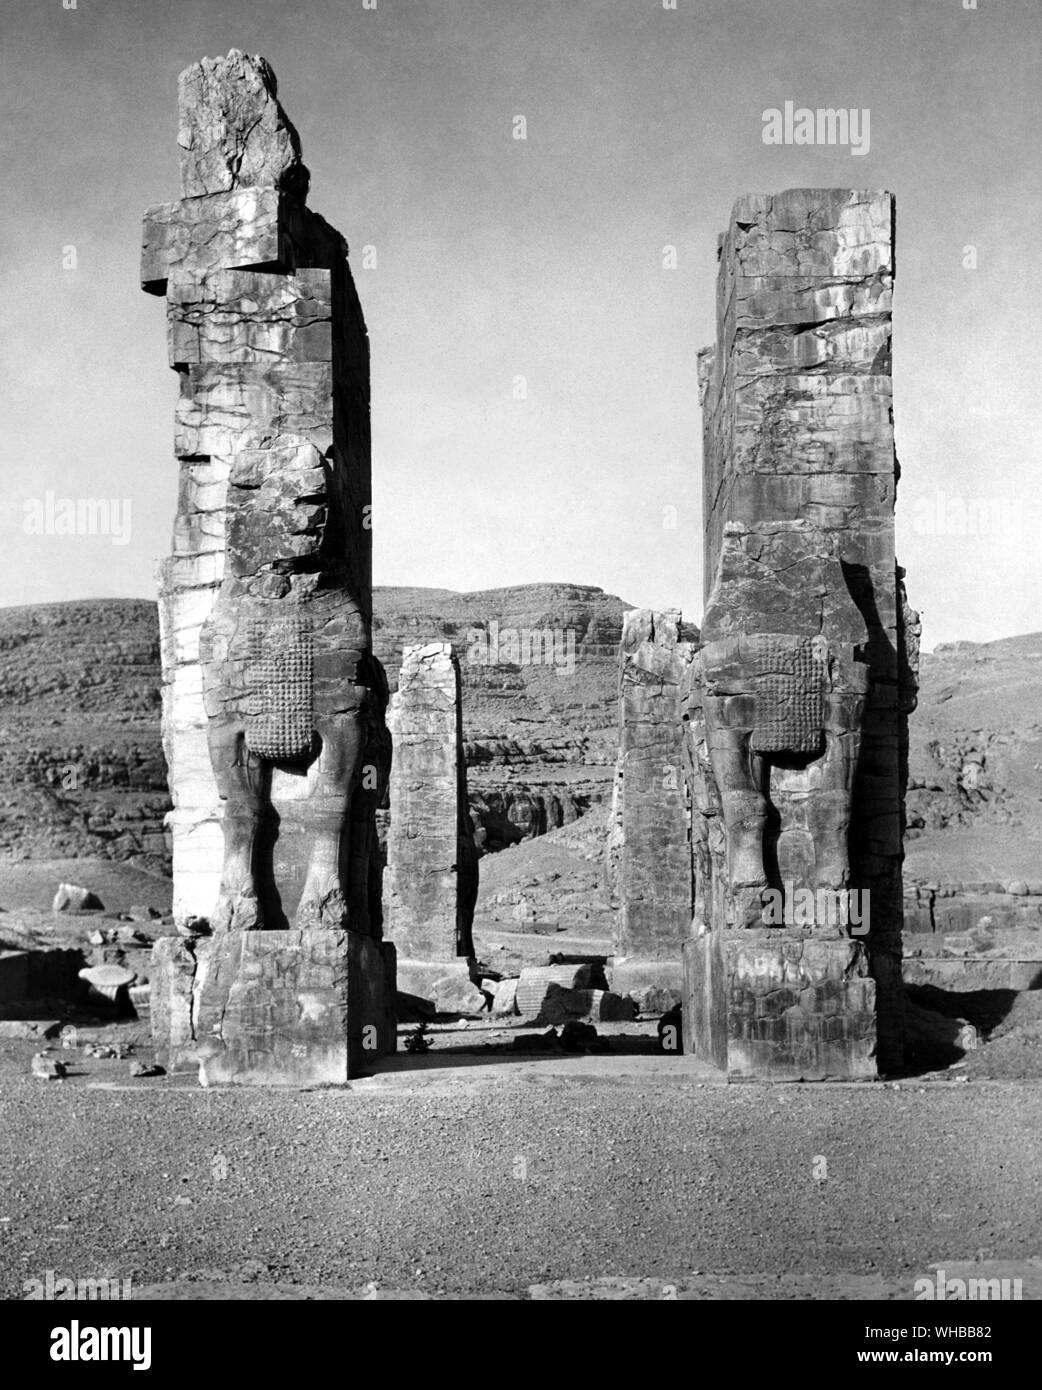 Persepolis : ancienne ville de Perse , capitale de l'Empire perse , fondée par Darius . Près de Shiraz, Iran moderne . . Une paire de Lamassu's , stand à l'entrée en fonction de la puissance de l'Empire . Banque D'Images